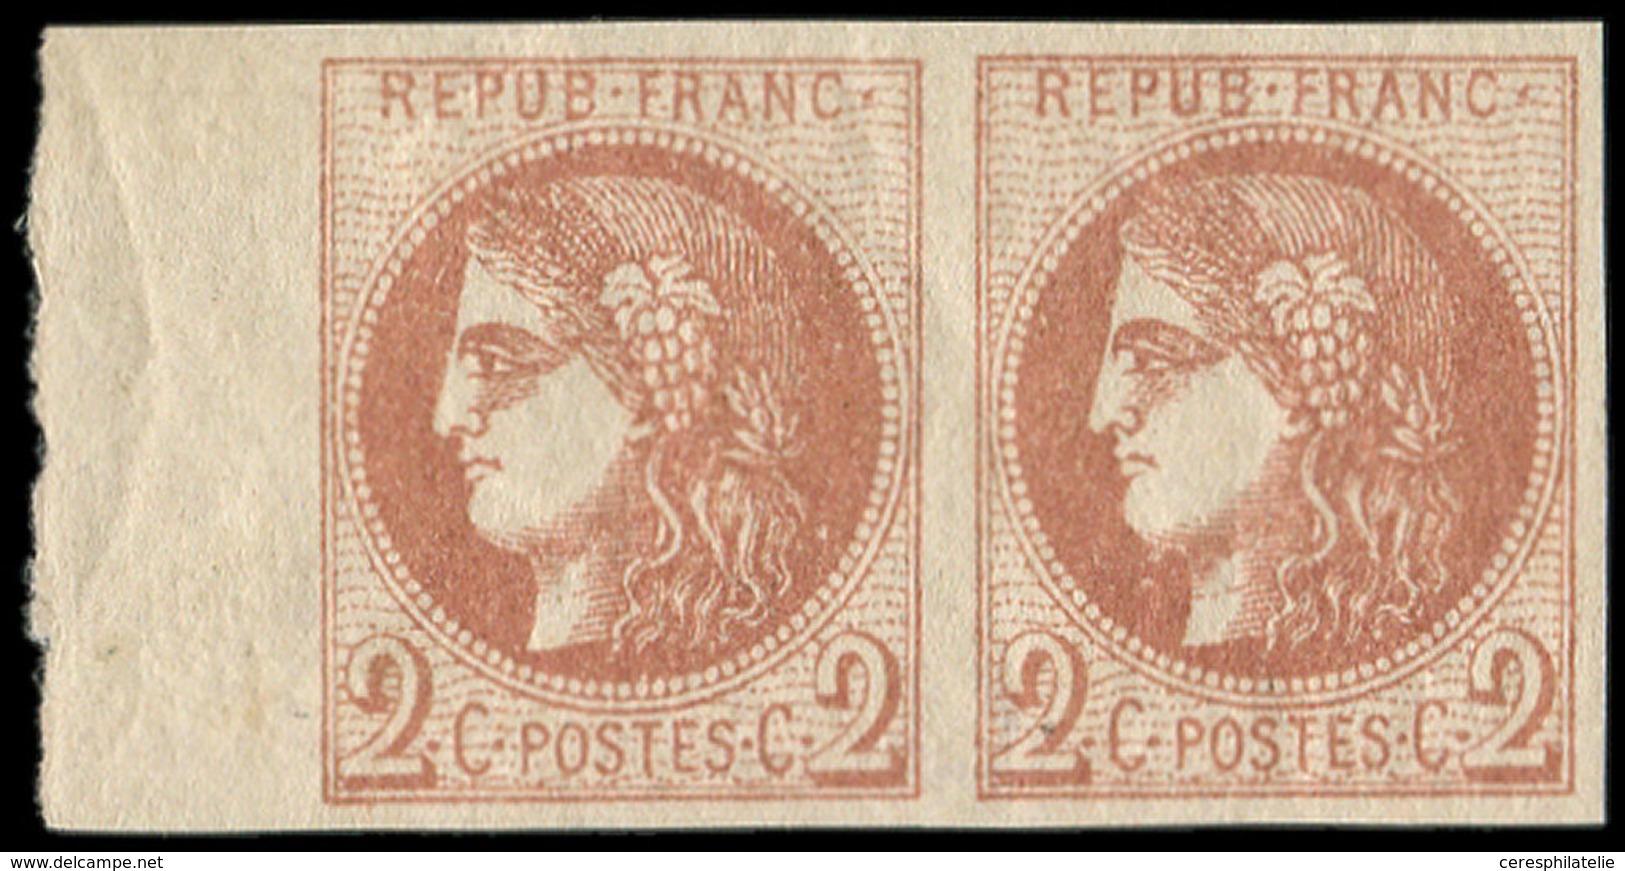 ** EMISSION DE BORDEAUX - 40B   2c. Brun-rouge, R II, PAIRE Bdf, TTB - 1870 Emission De Bordeaux